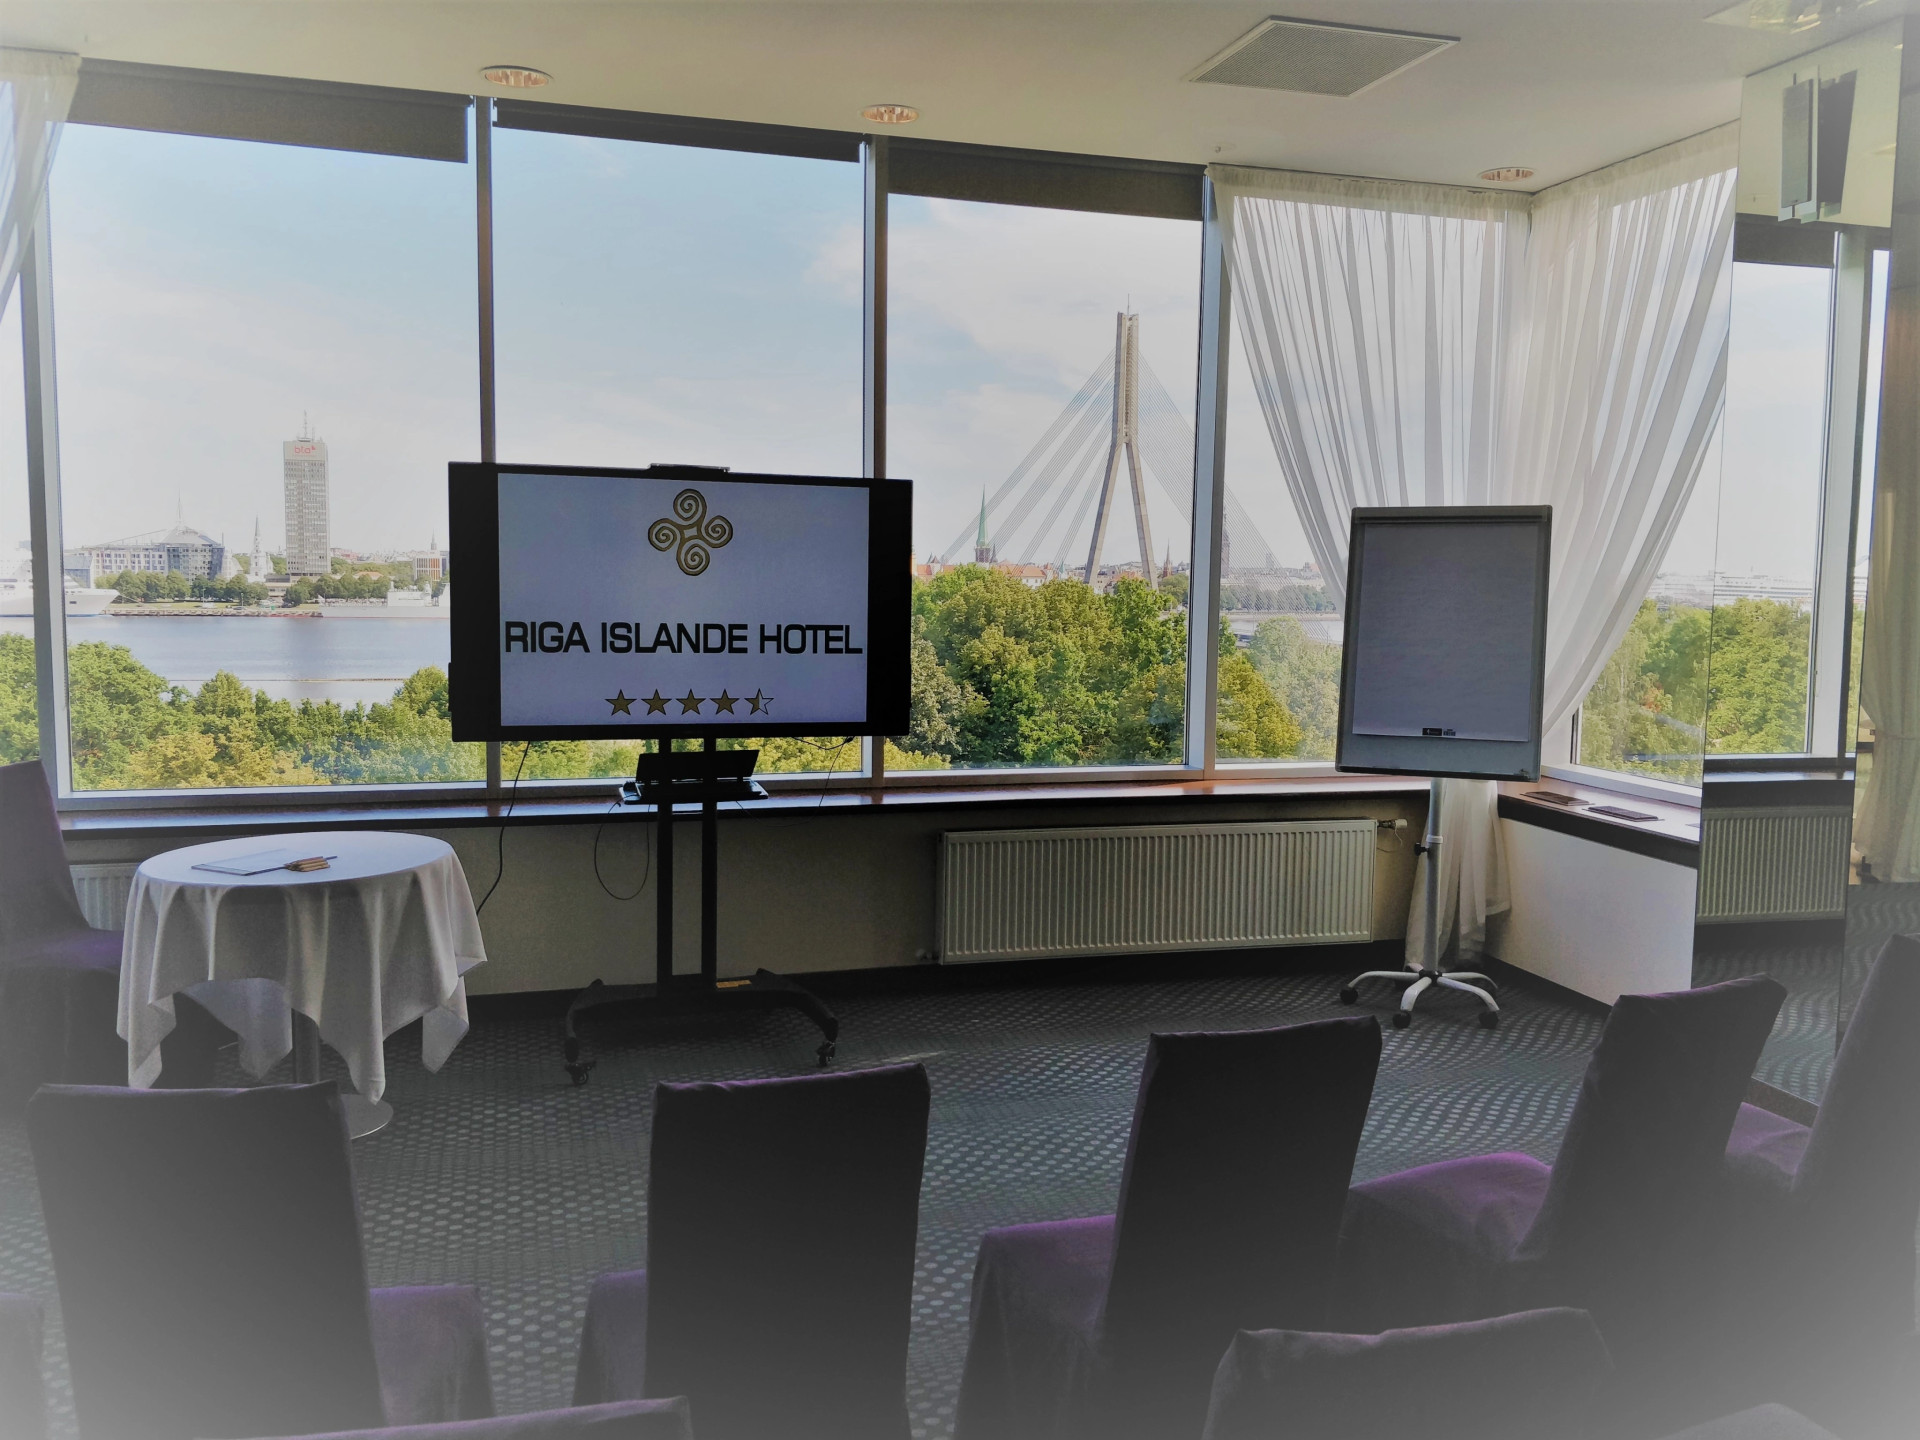 Conference rooms | Riga | Riga Islande Hotel | picture